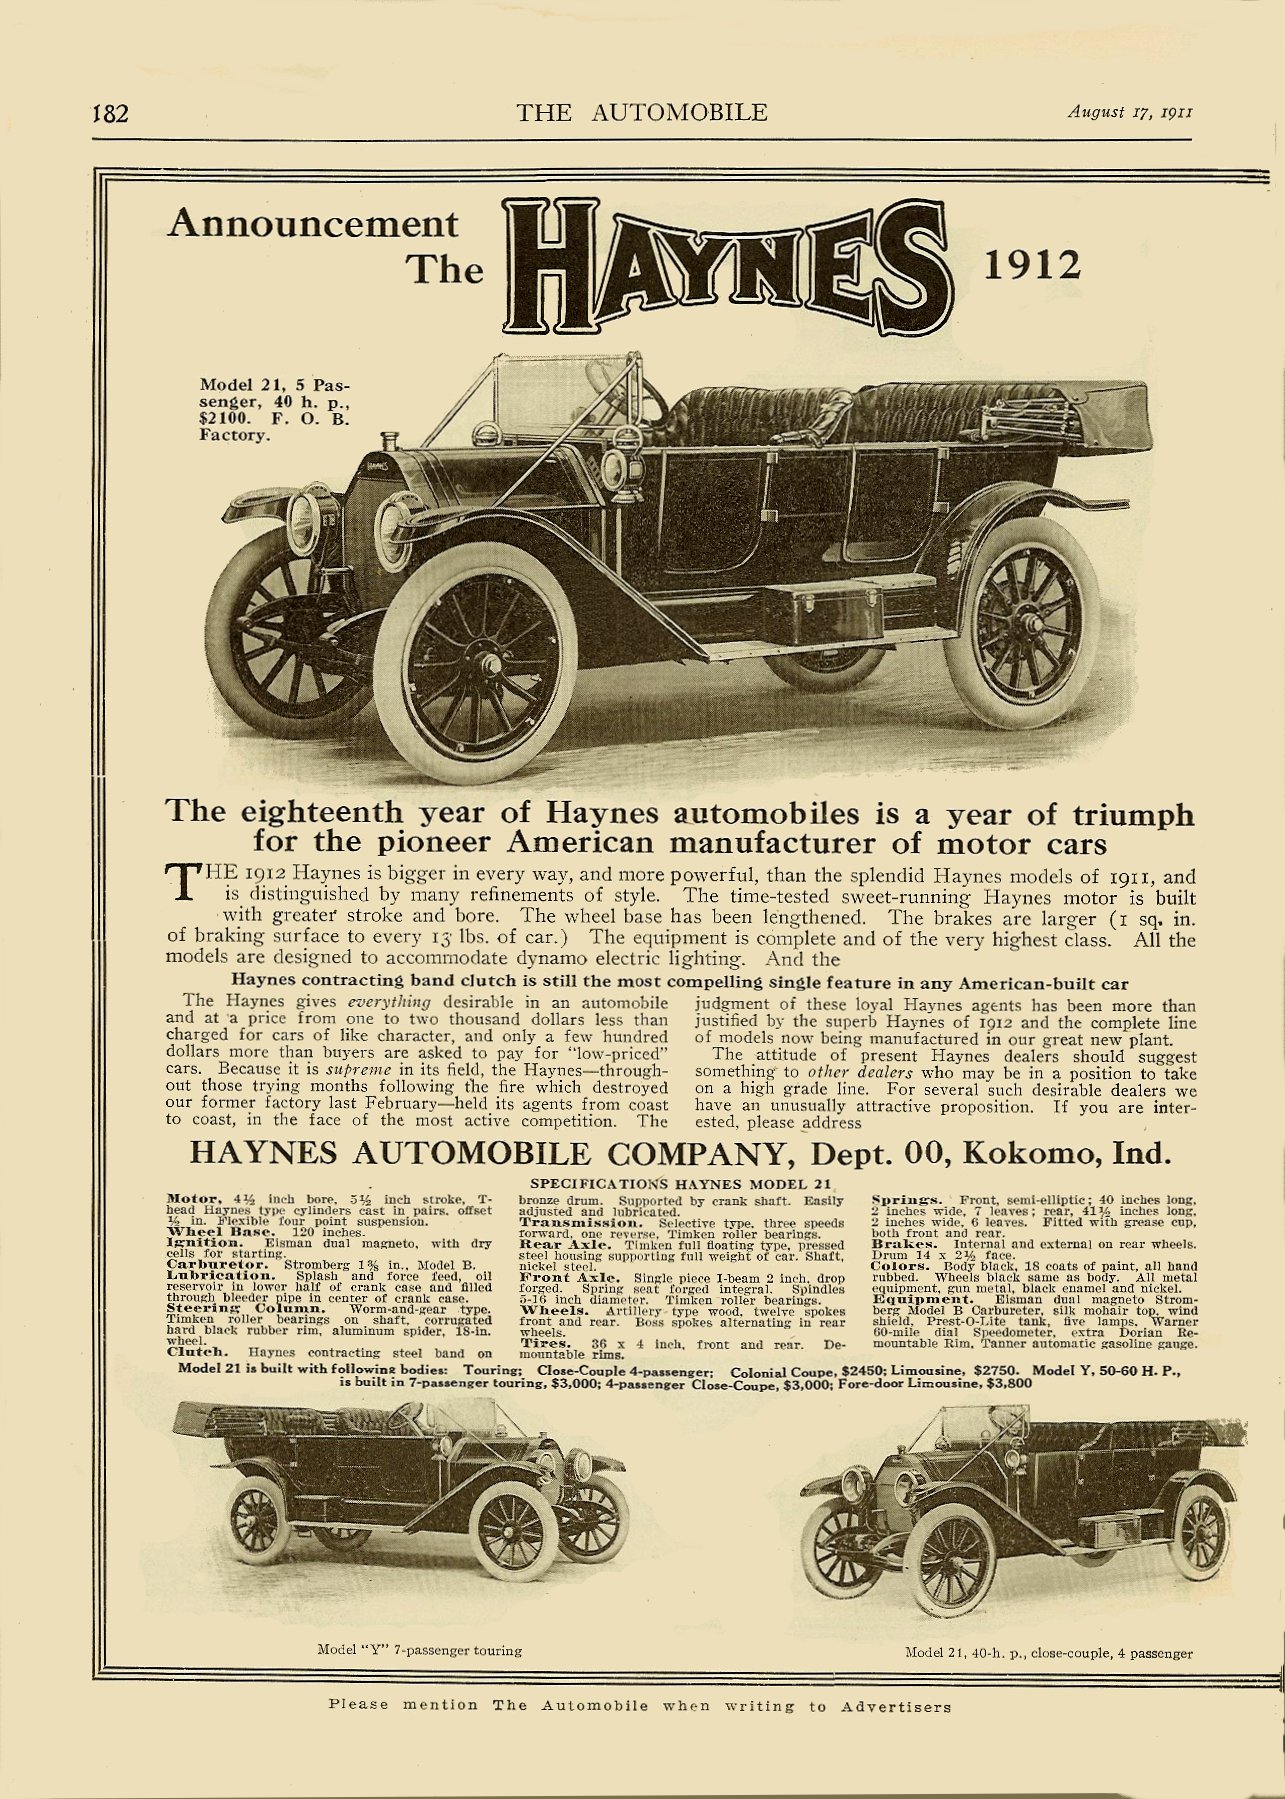 1911 Haynes-Apperson Auto Advertising